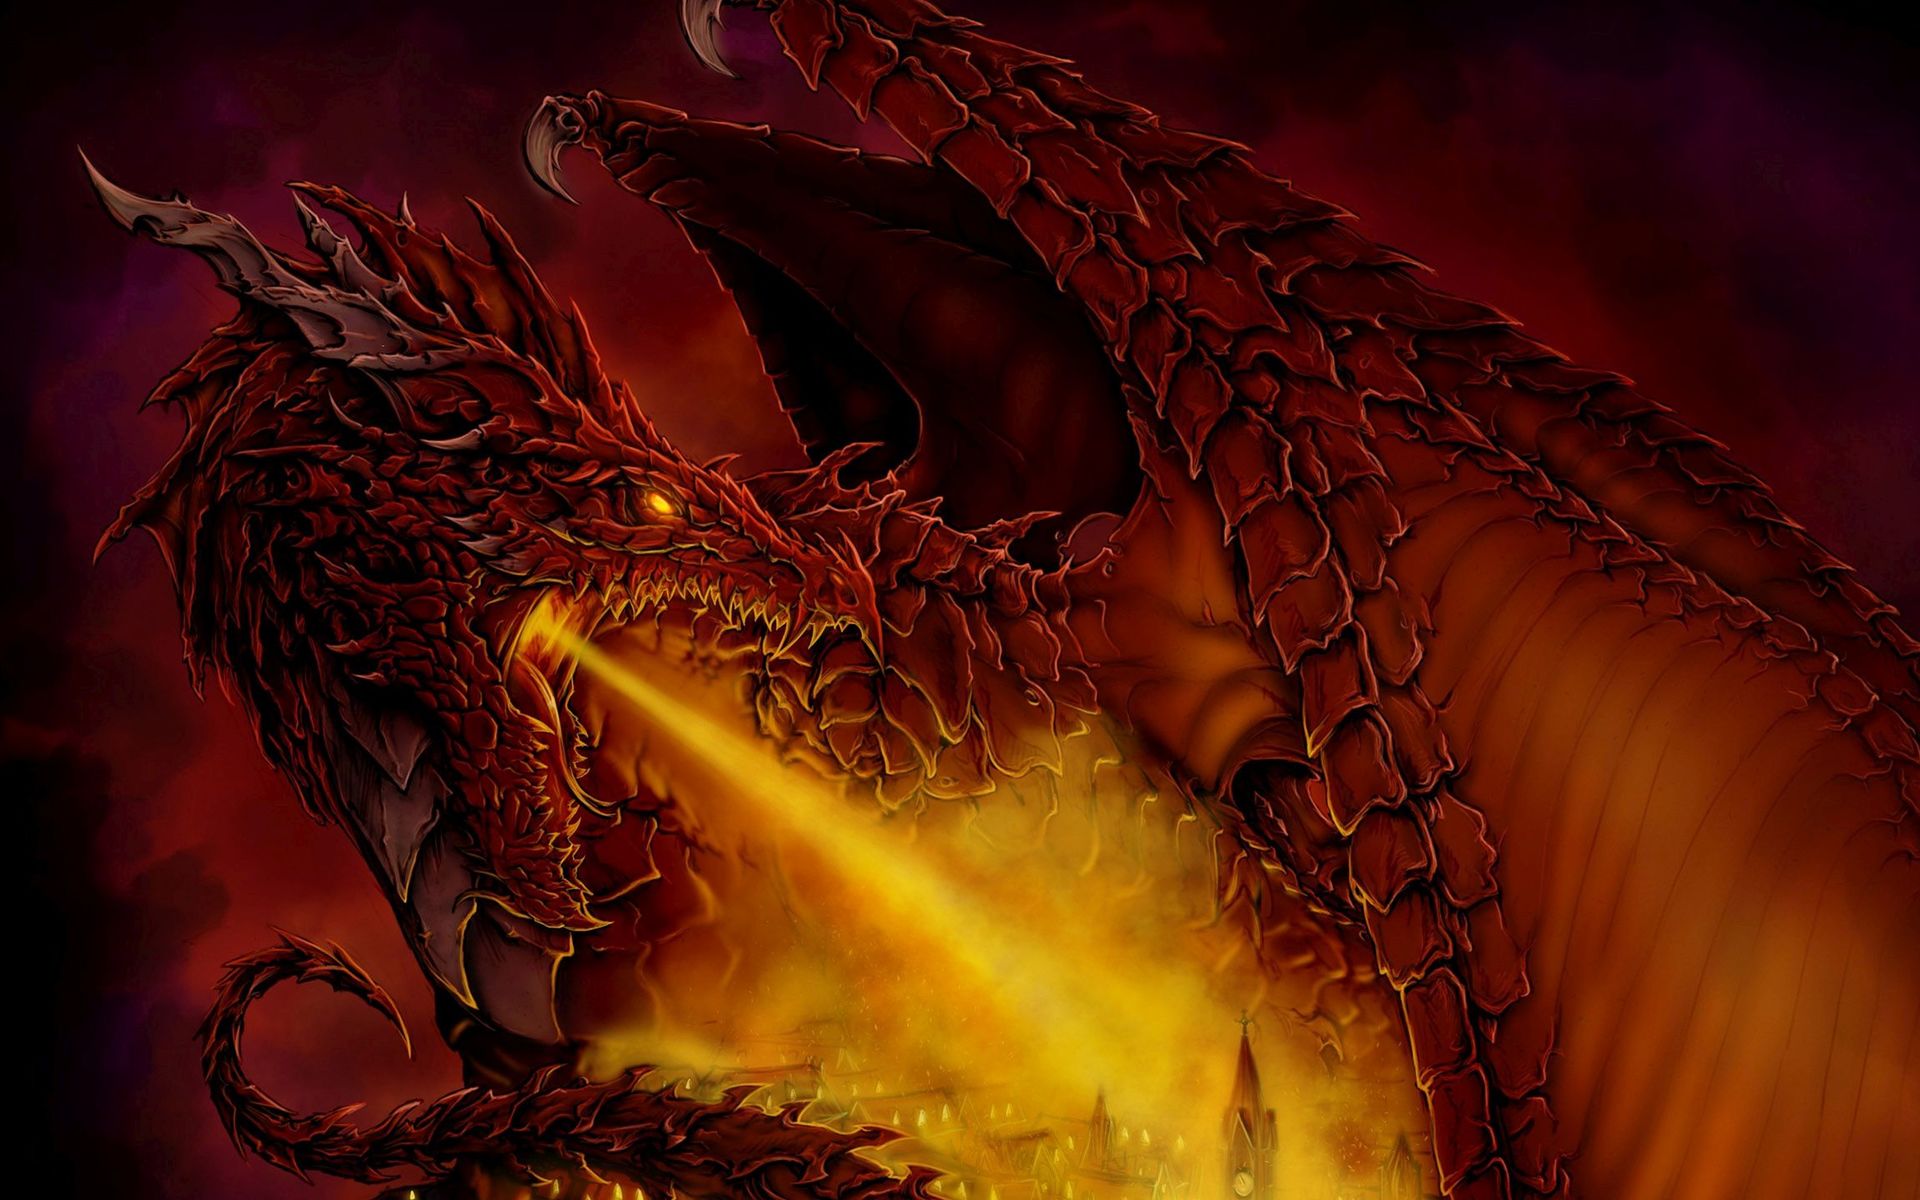 Red Dragon Spitting Fire Widescreen Wallpaper